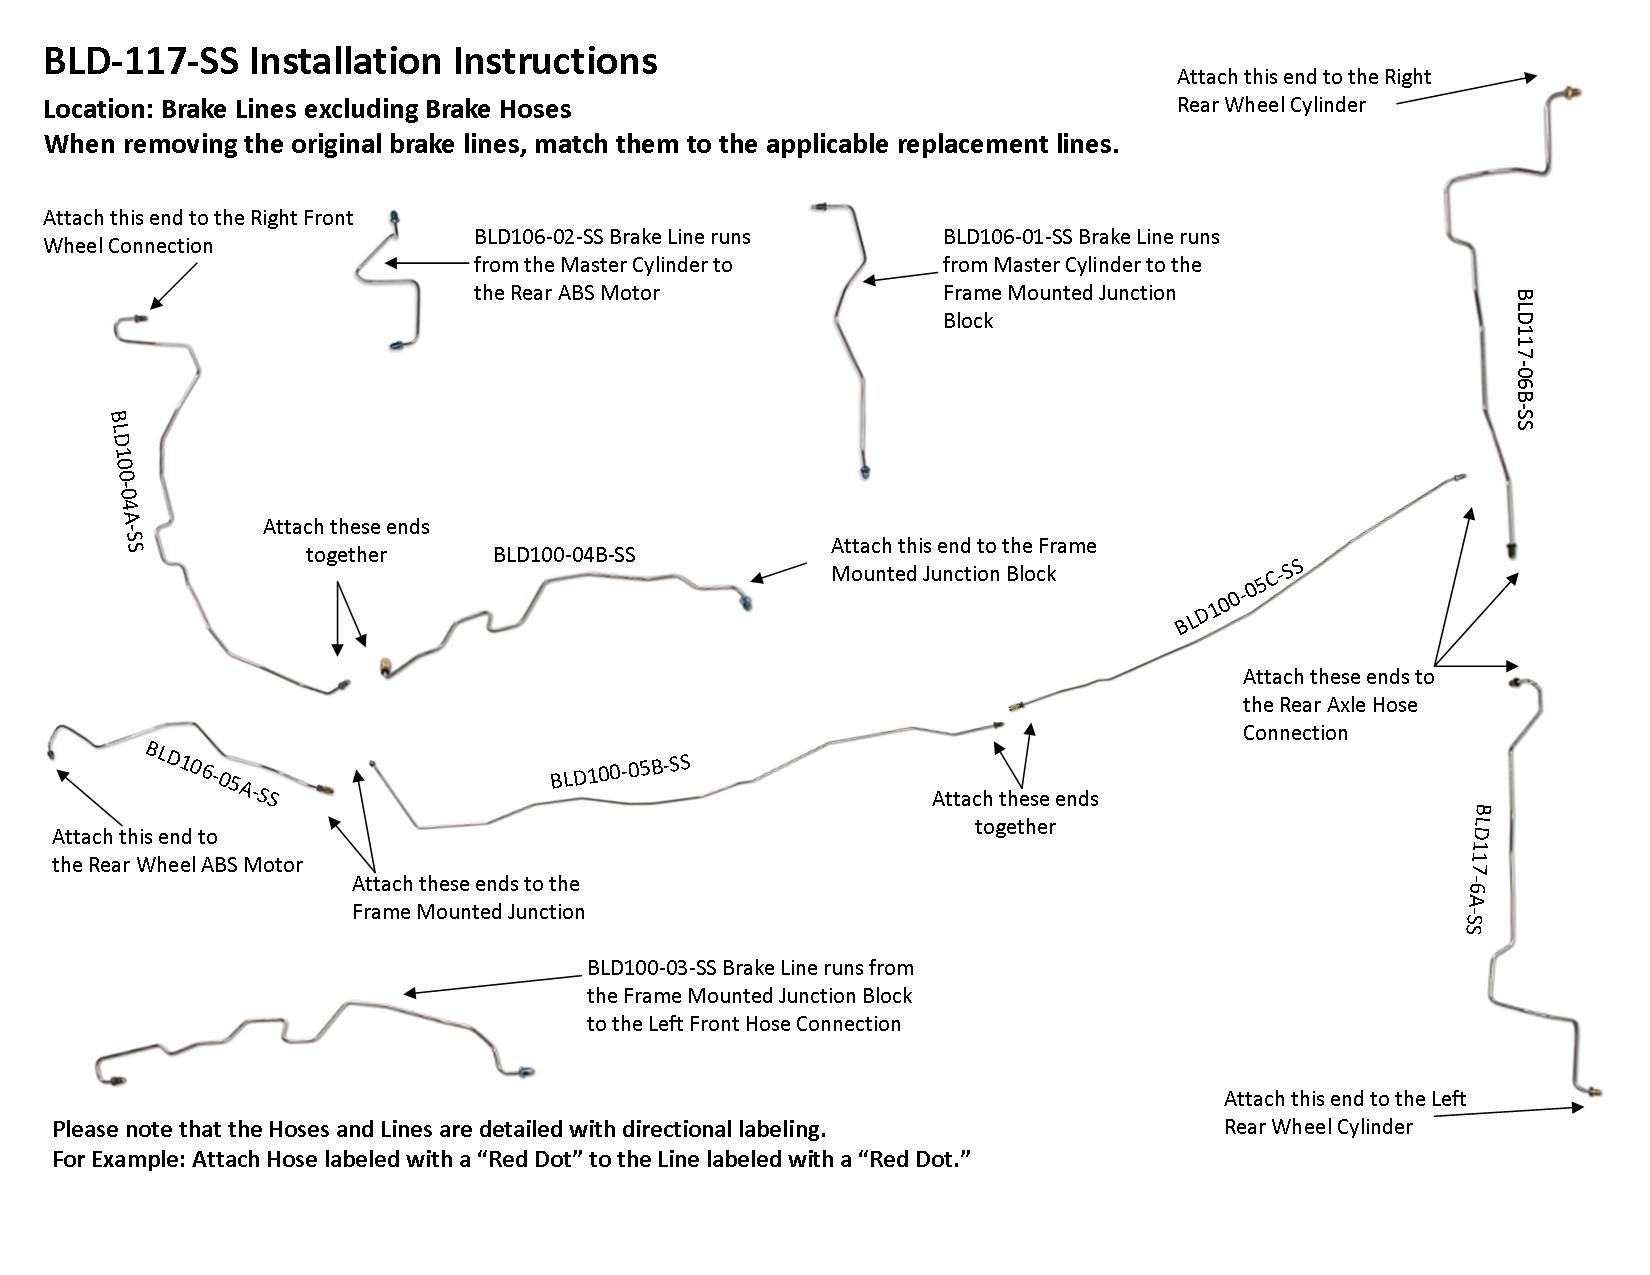 bld-117-ss-installation-instructions.jpg